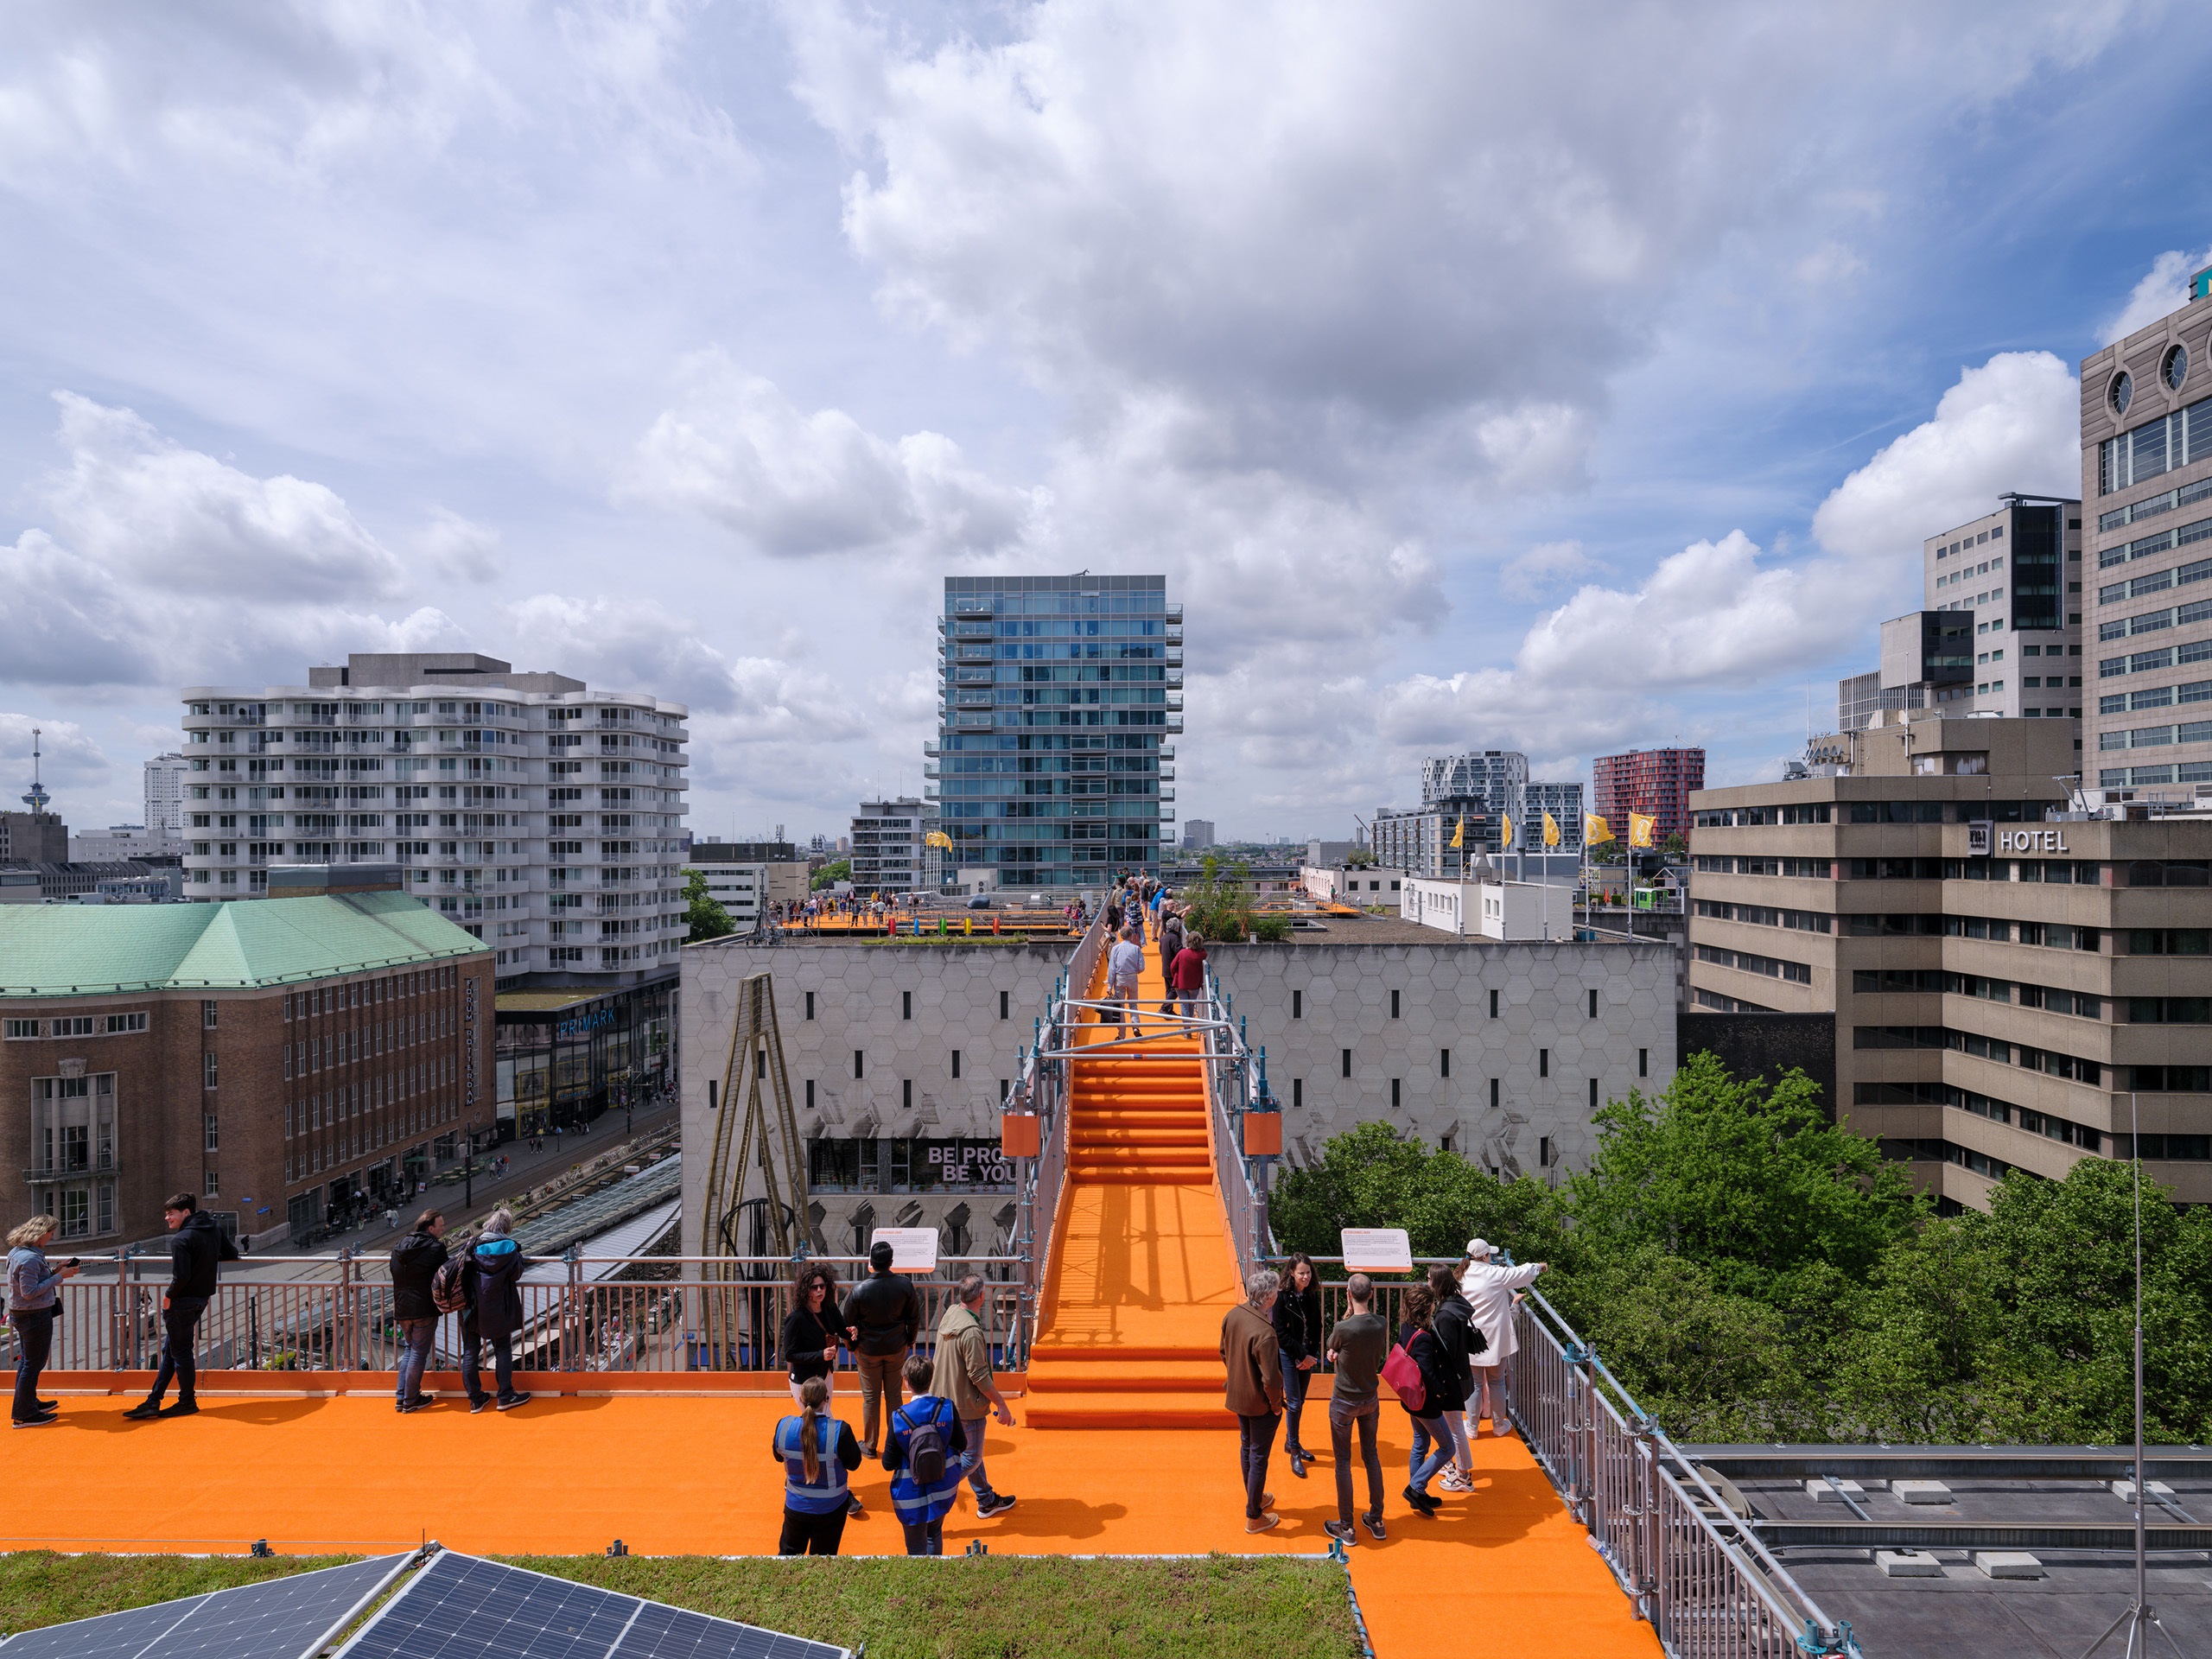 The Rotterdam Roof Walk has begun!